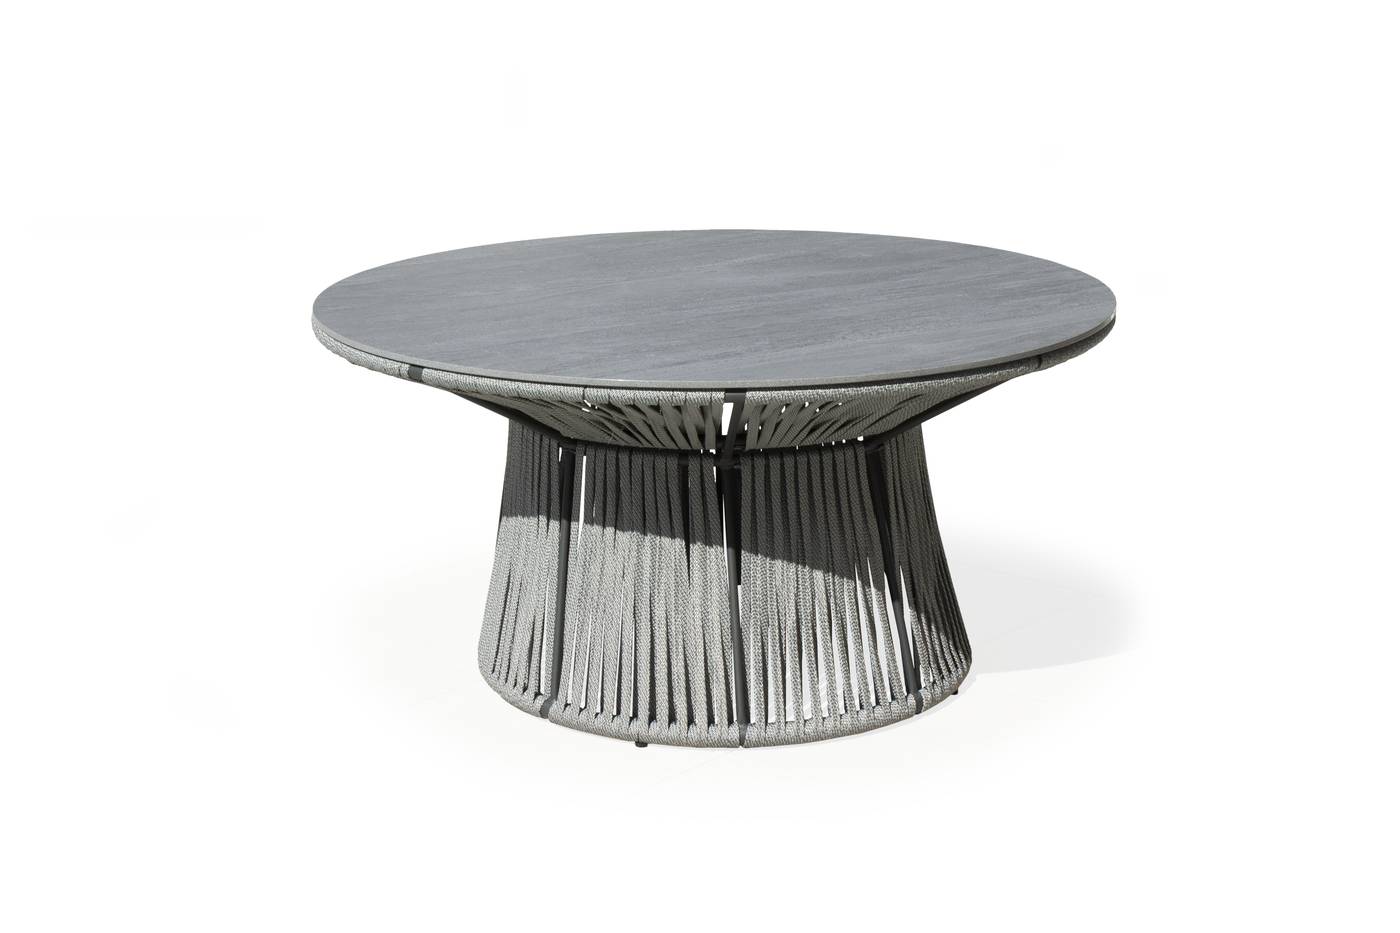 Mesa circular 150 cm, con tablero HPL ultra resistente. Estructura aluminio revestida de cuerda. Colores: blanco, gris, marrón o champagne.